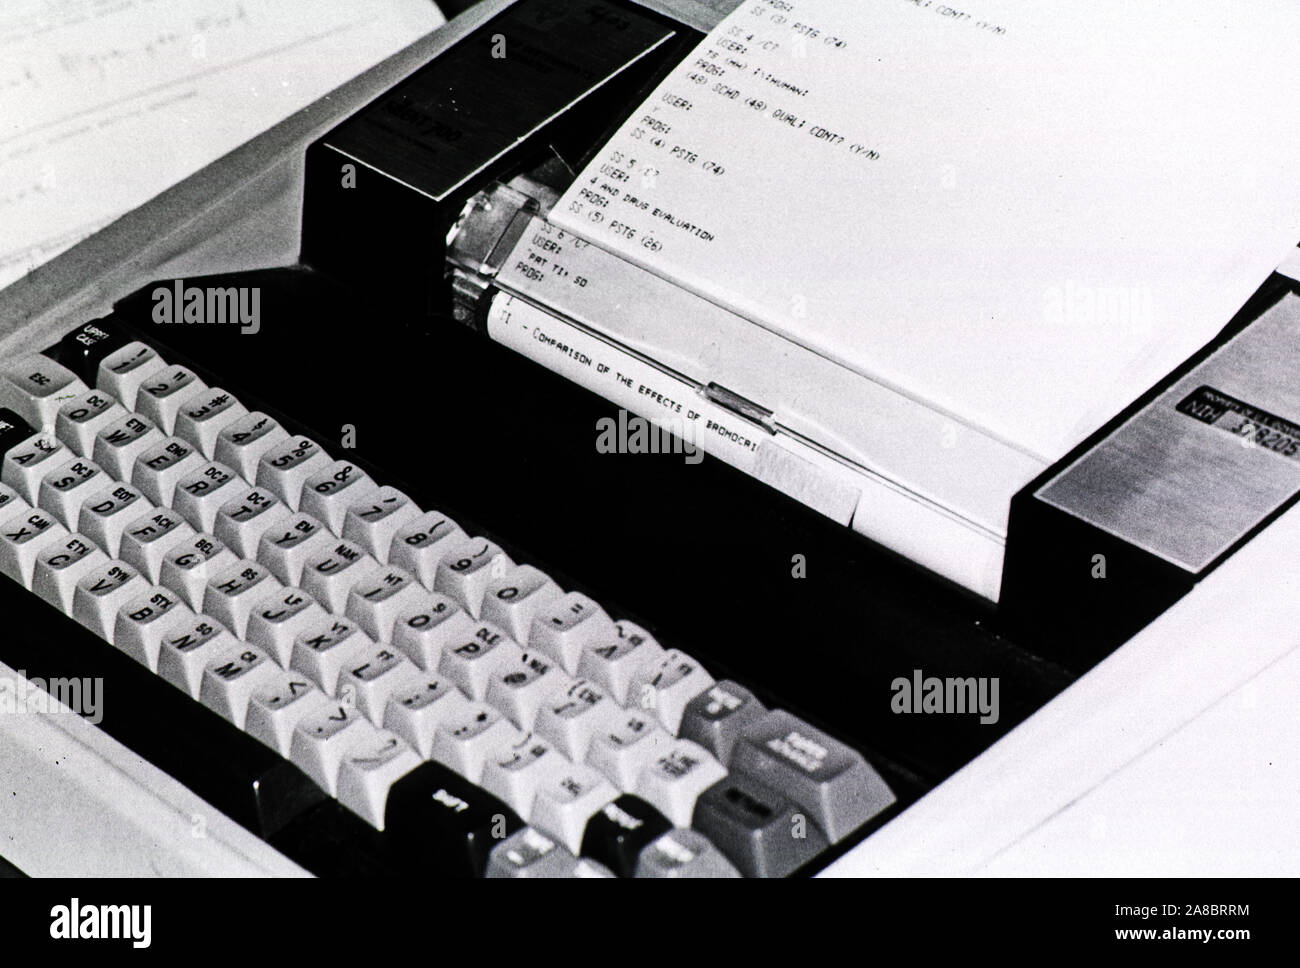 MEDLINE silenziosa del 700 da Texas Instruments ca. 1977 Foto Stock